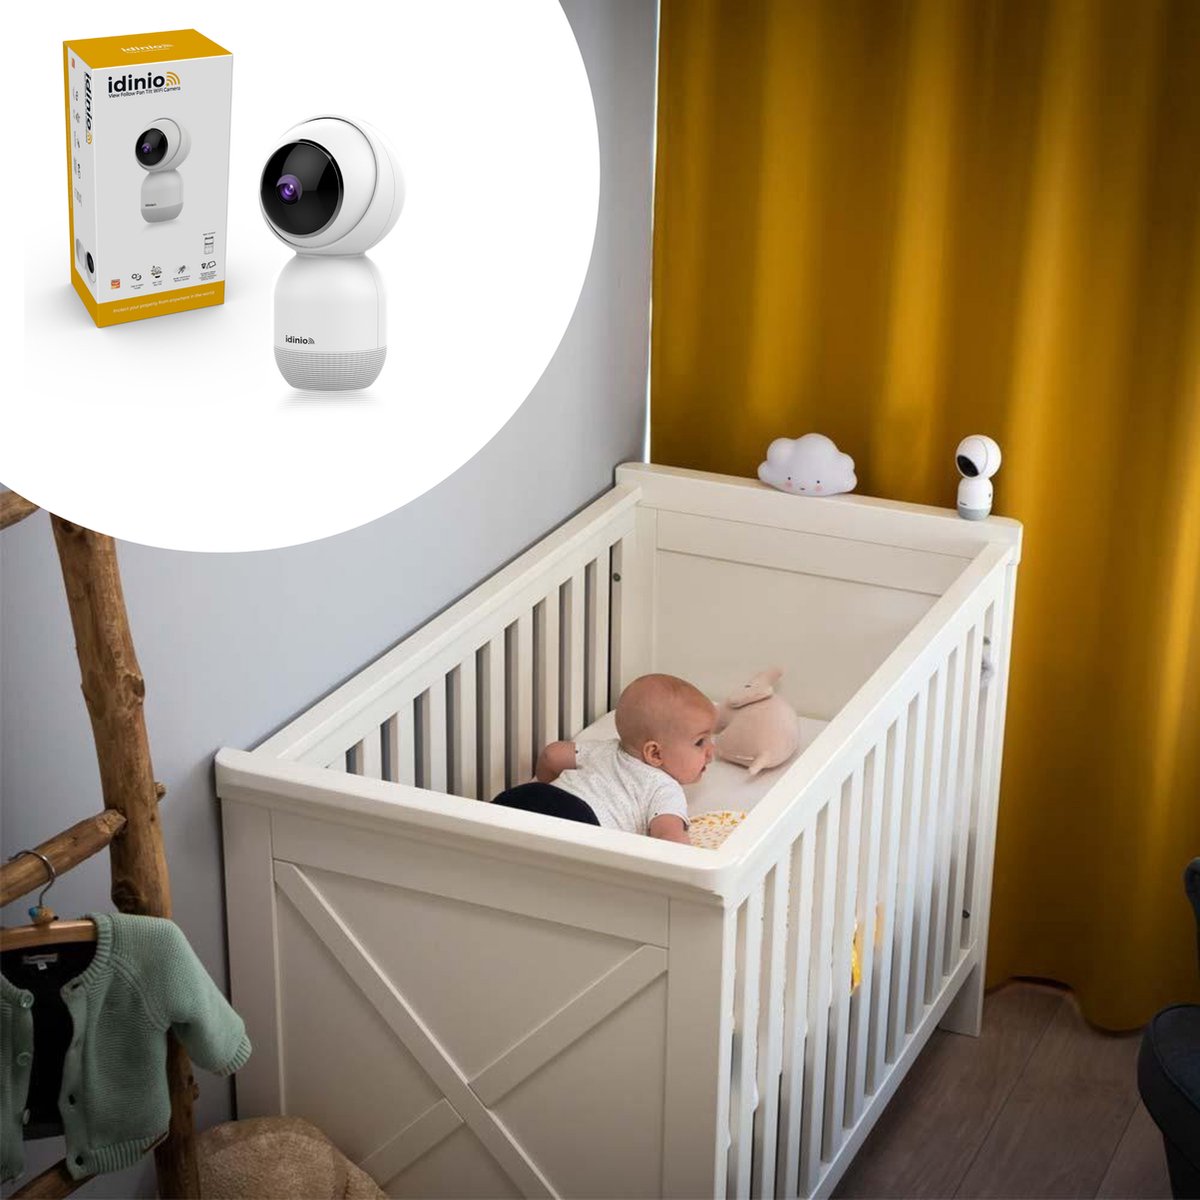 Idinio Babyfoon camera met app - draaibaar - terugspreekfunctie -  Bewegingsmelder - HD | bol.com